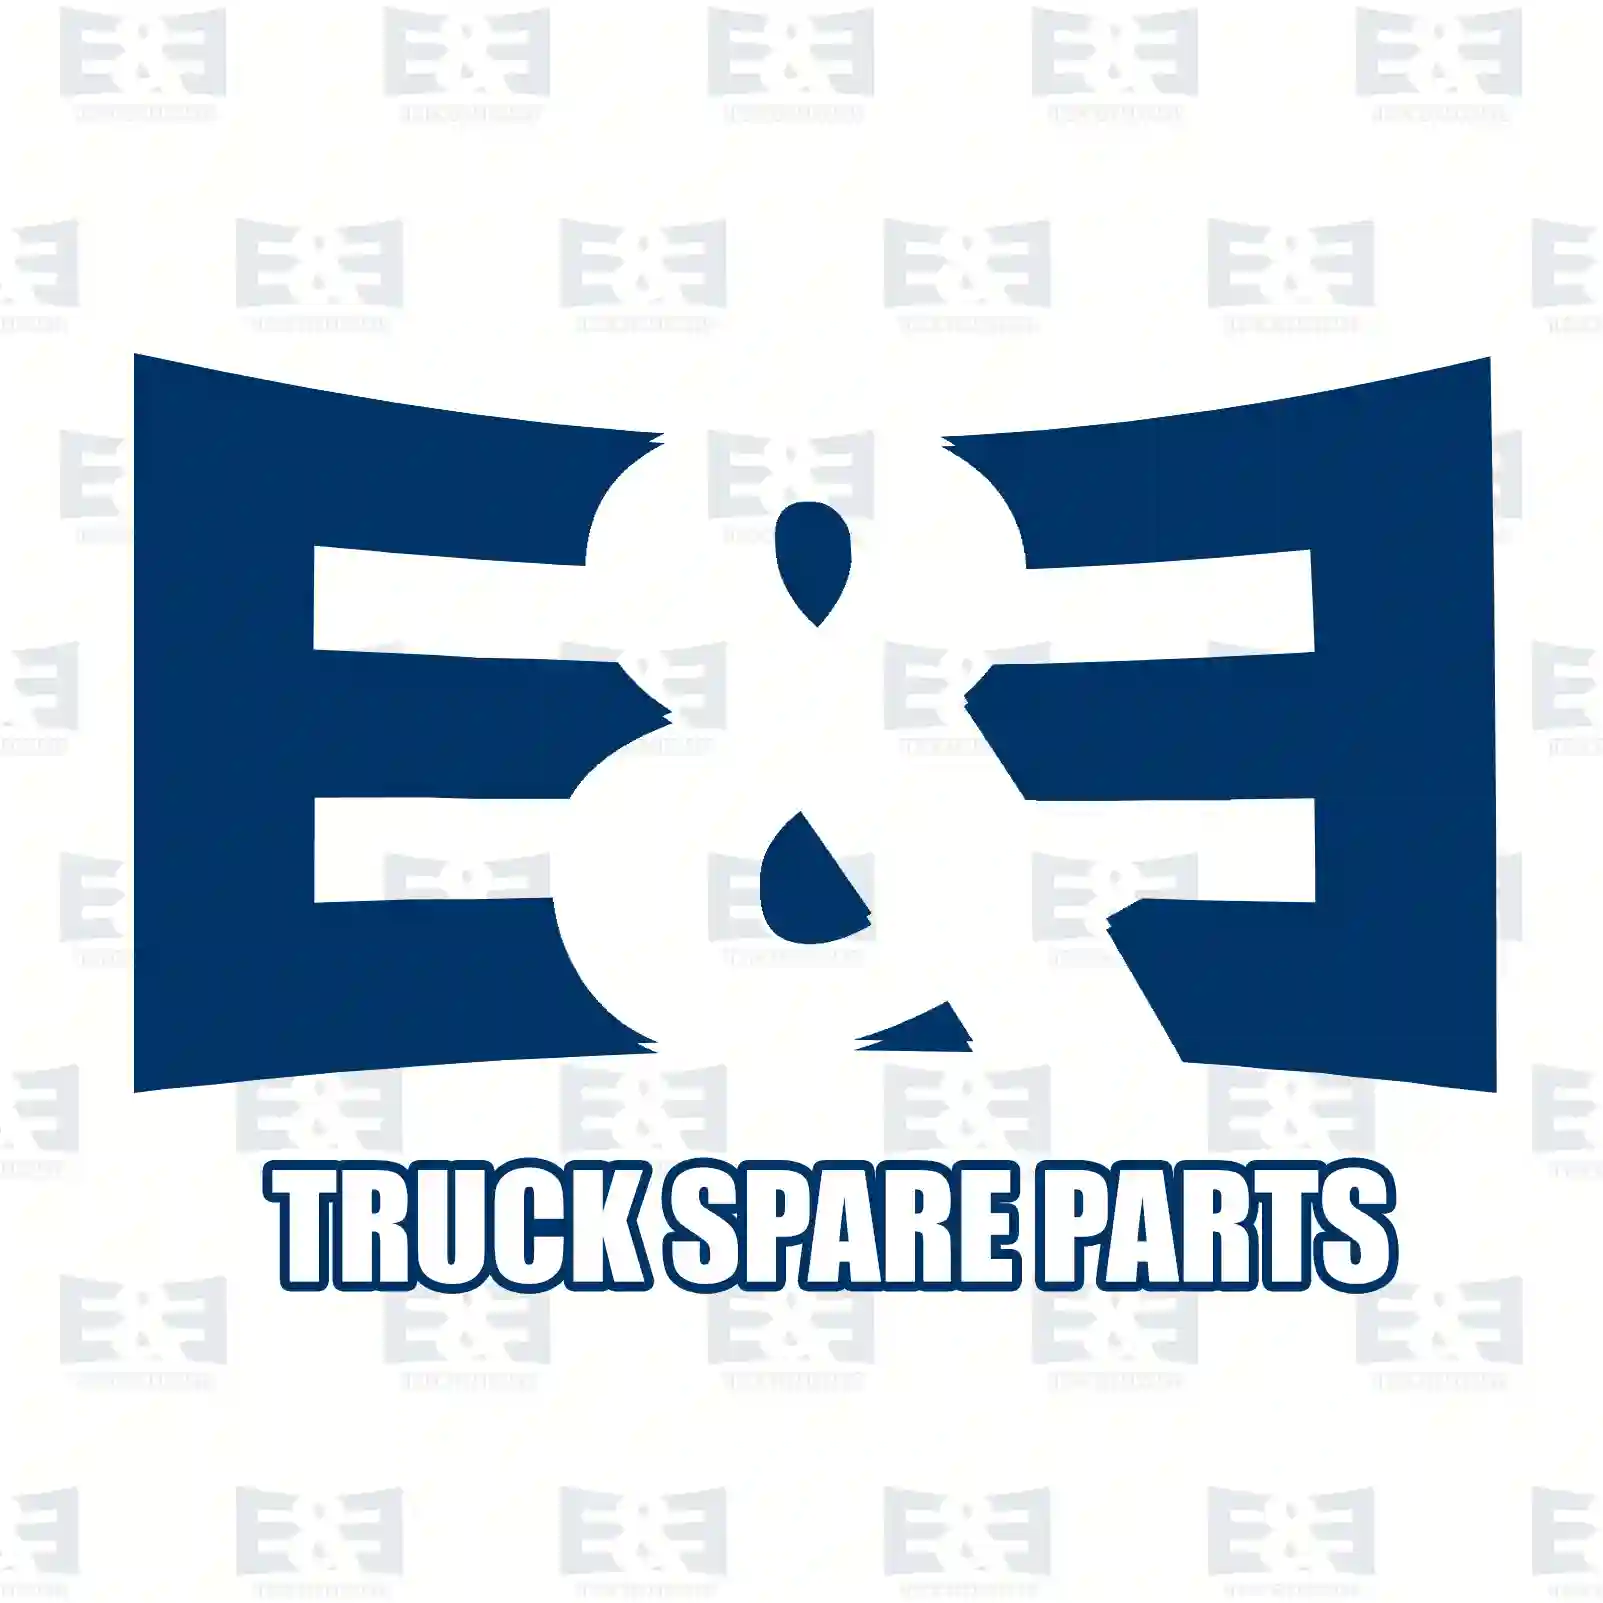 Push-in-connector, plastic, 2E2284088, #YOK ||  2E2284088 E&E Truck Spare Parts | Truck Spare Parts, Auotomotive Spare Parts Push-in-connector, plastic, 2E2284088, #YOK ||  2E2284088 E&E Truck Spare Parts | Truck Spare Parts, Auotomotive Spare Parts